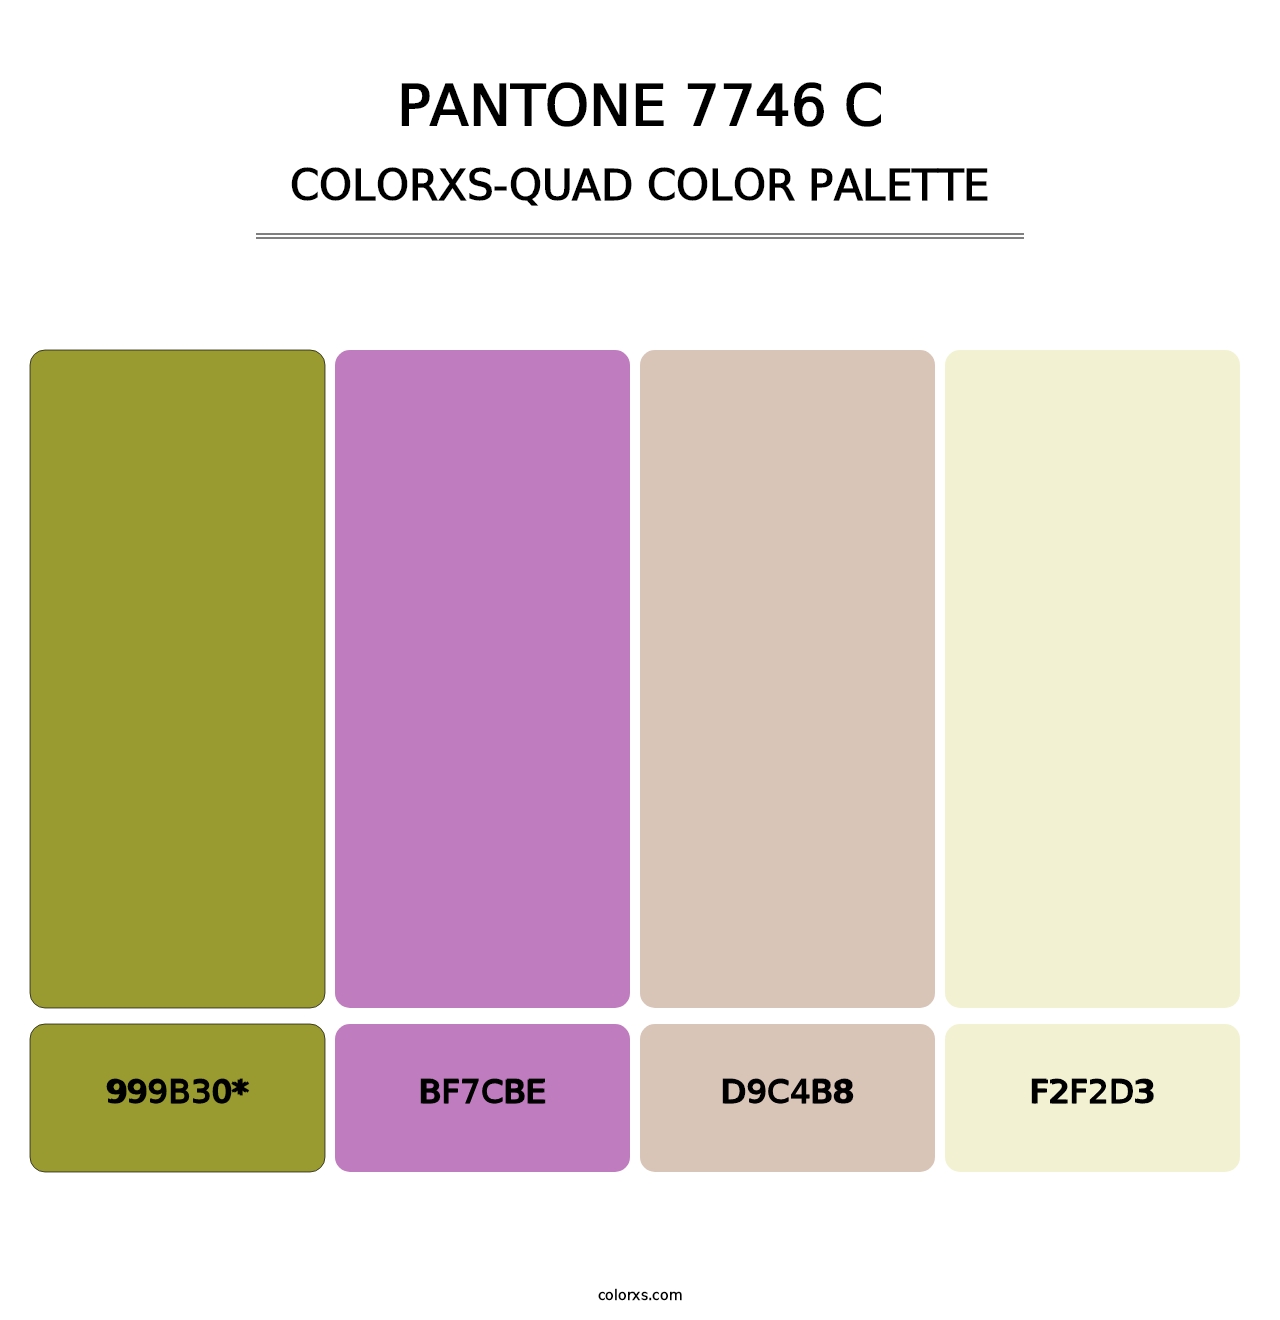 PANTONE 7746 C - Colorxs Quad Palette